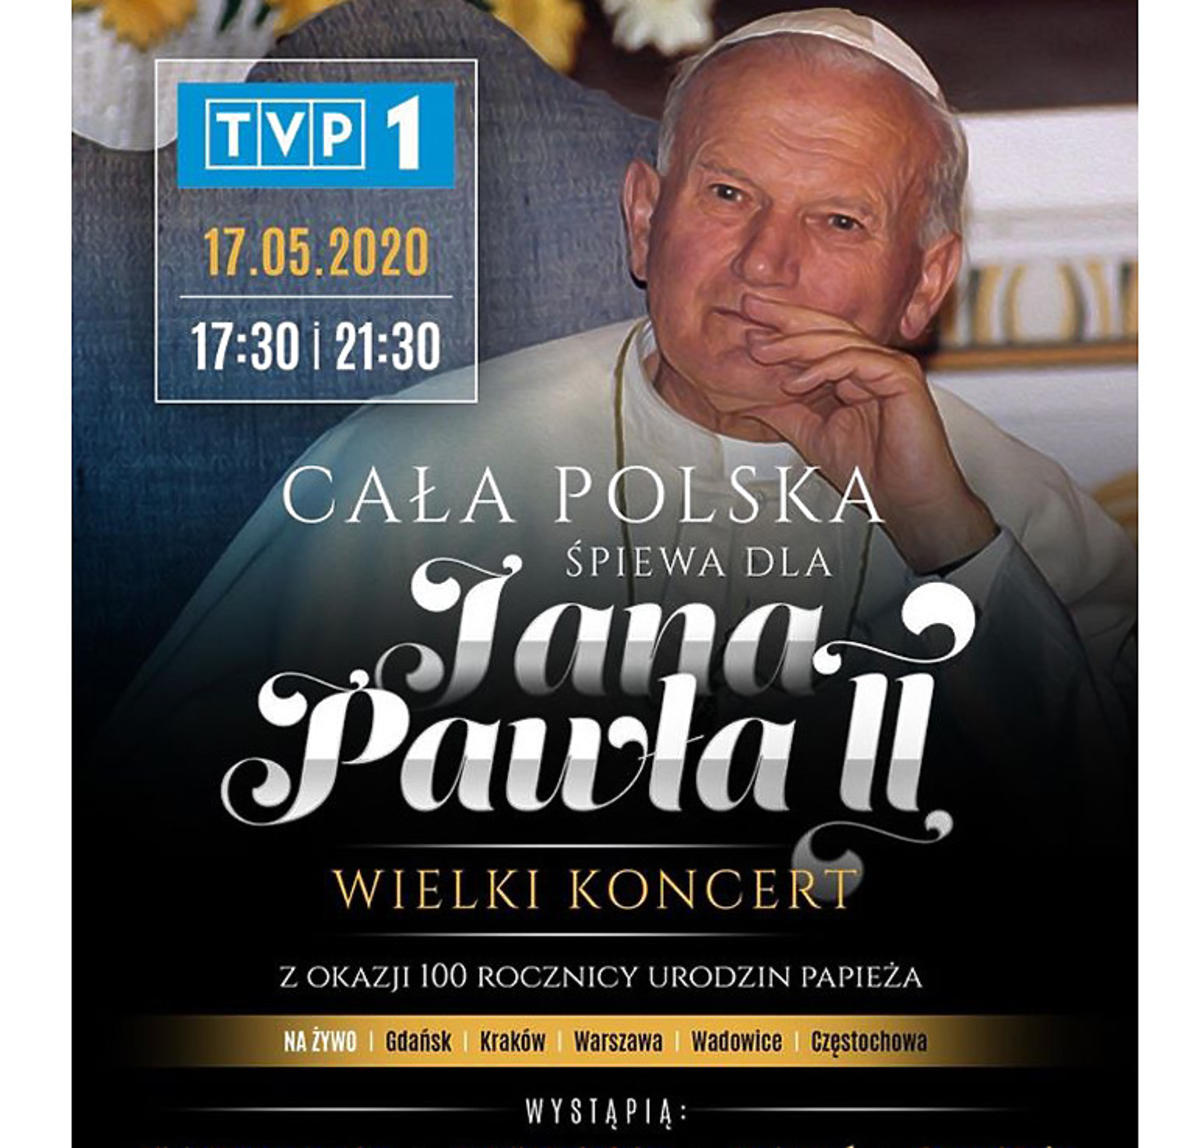 Koncert z okazji 100. urodzin papieża Polaka Jana Pawła 2. Kto wystąpi?